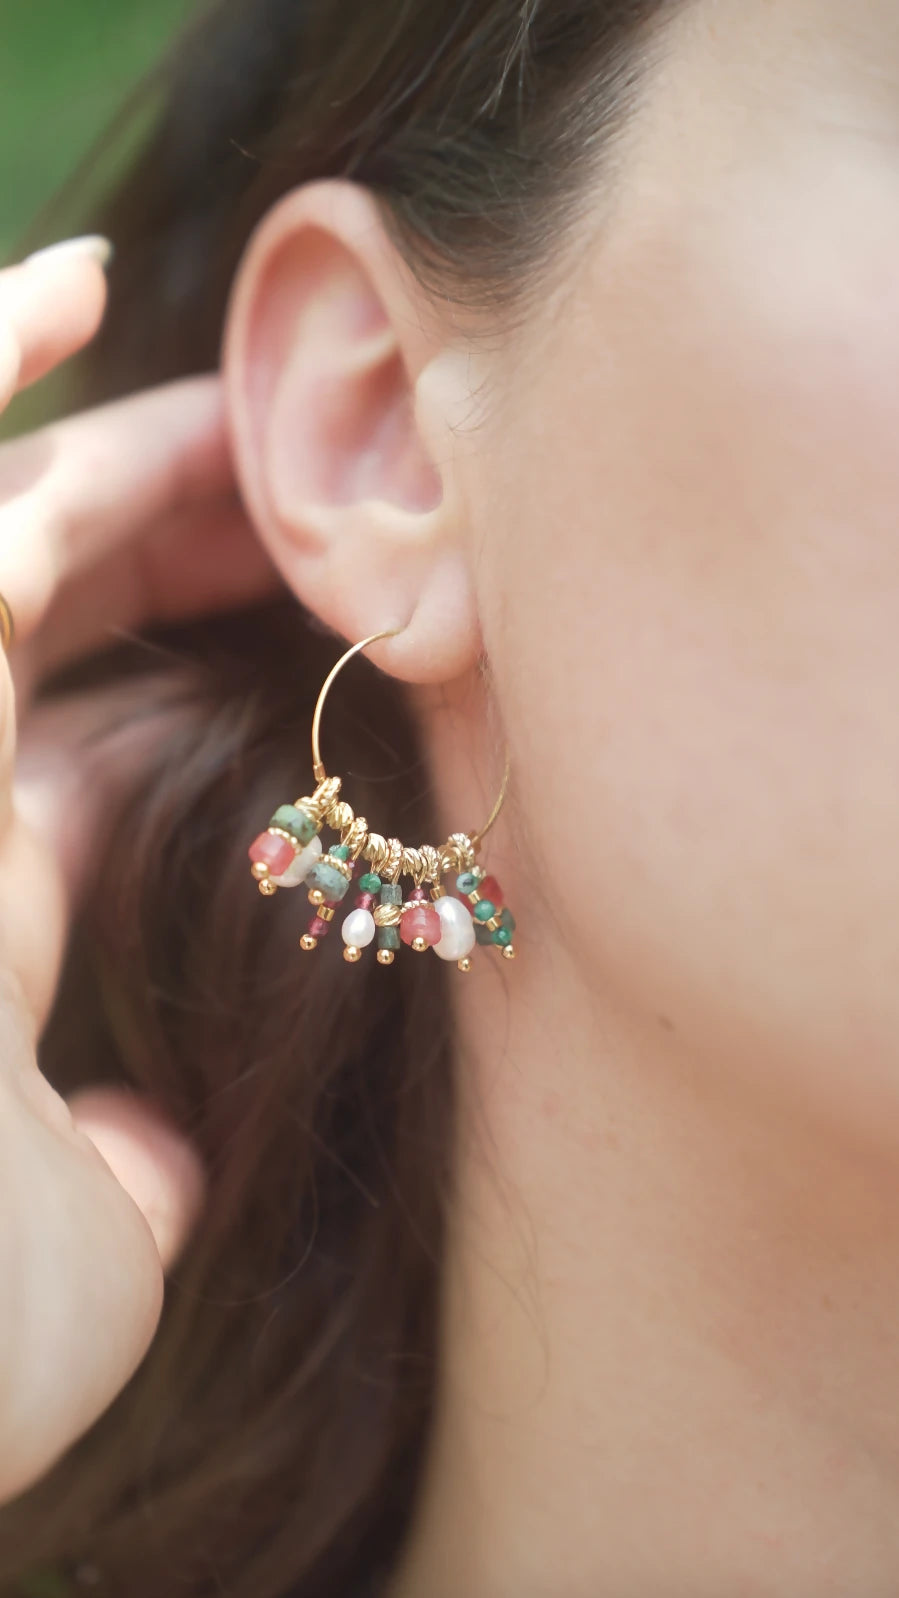 Mini boucles d'oreilles créoles dorées ornées de perles et pierres semi-précieuses colorées rouges et vertes